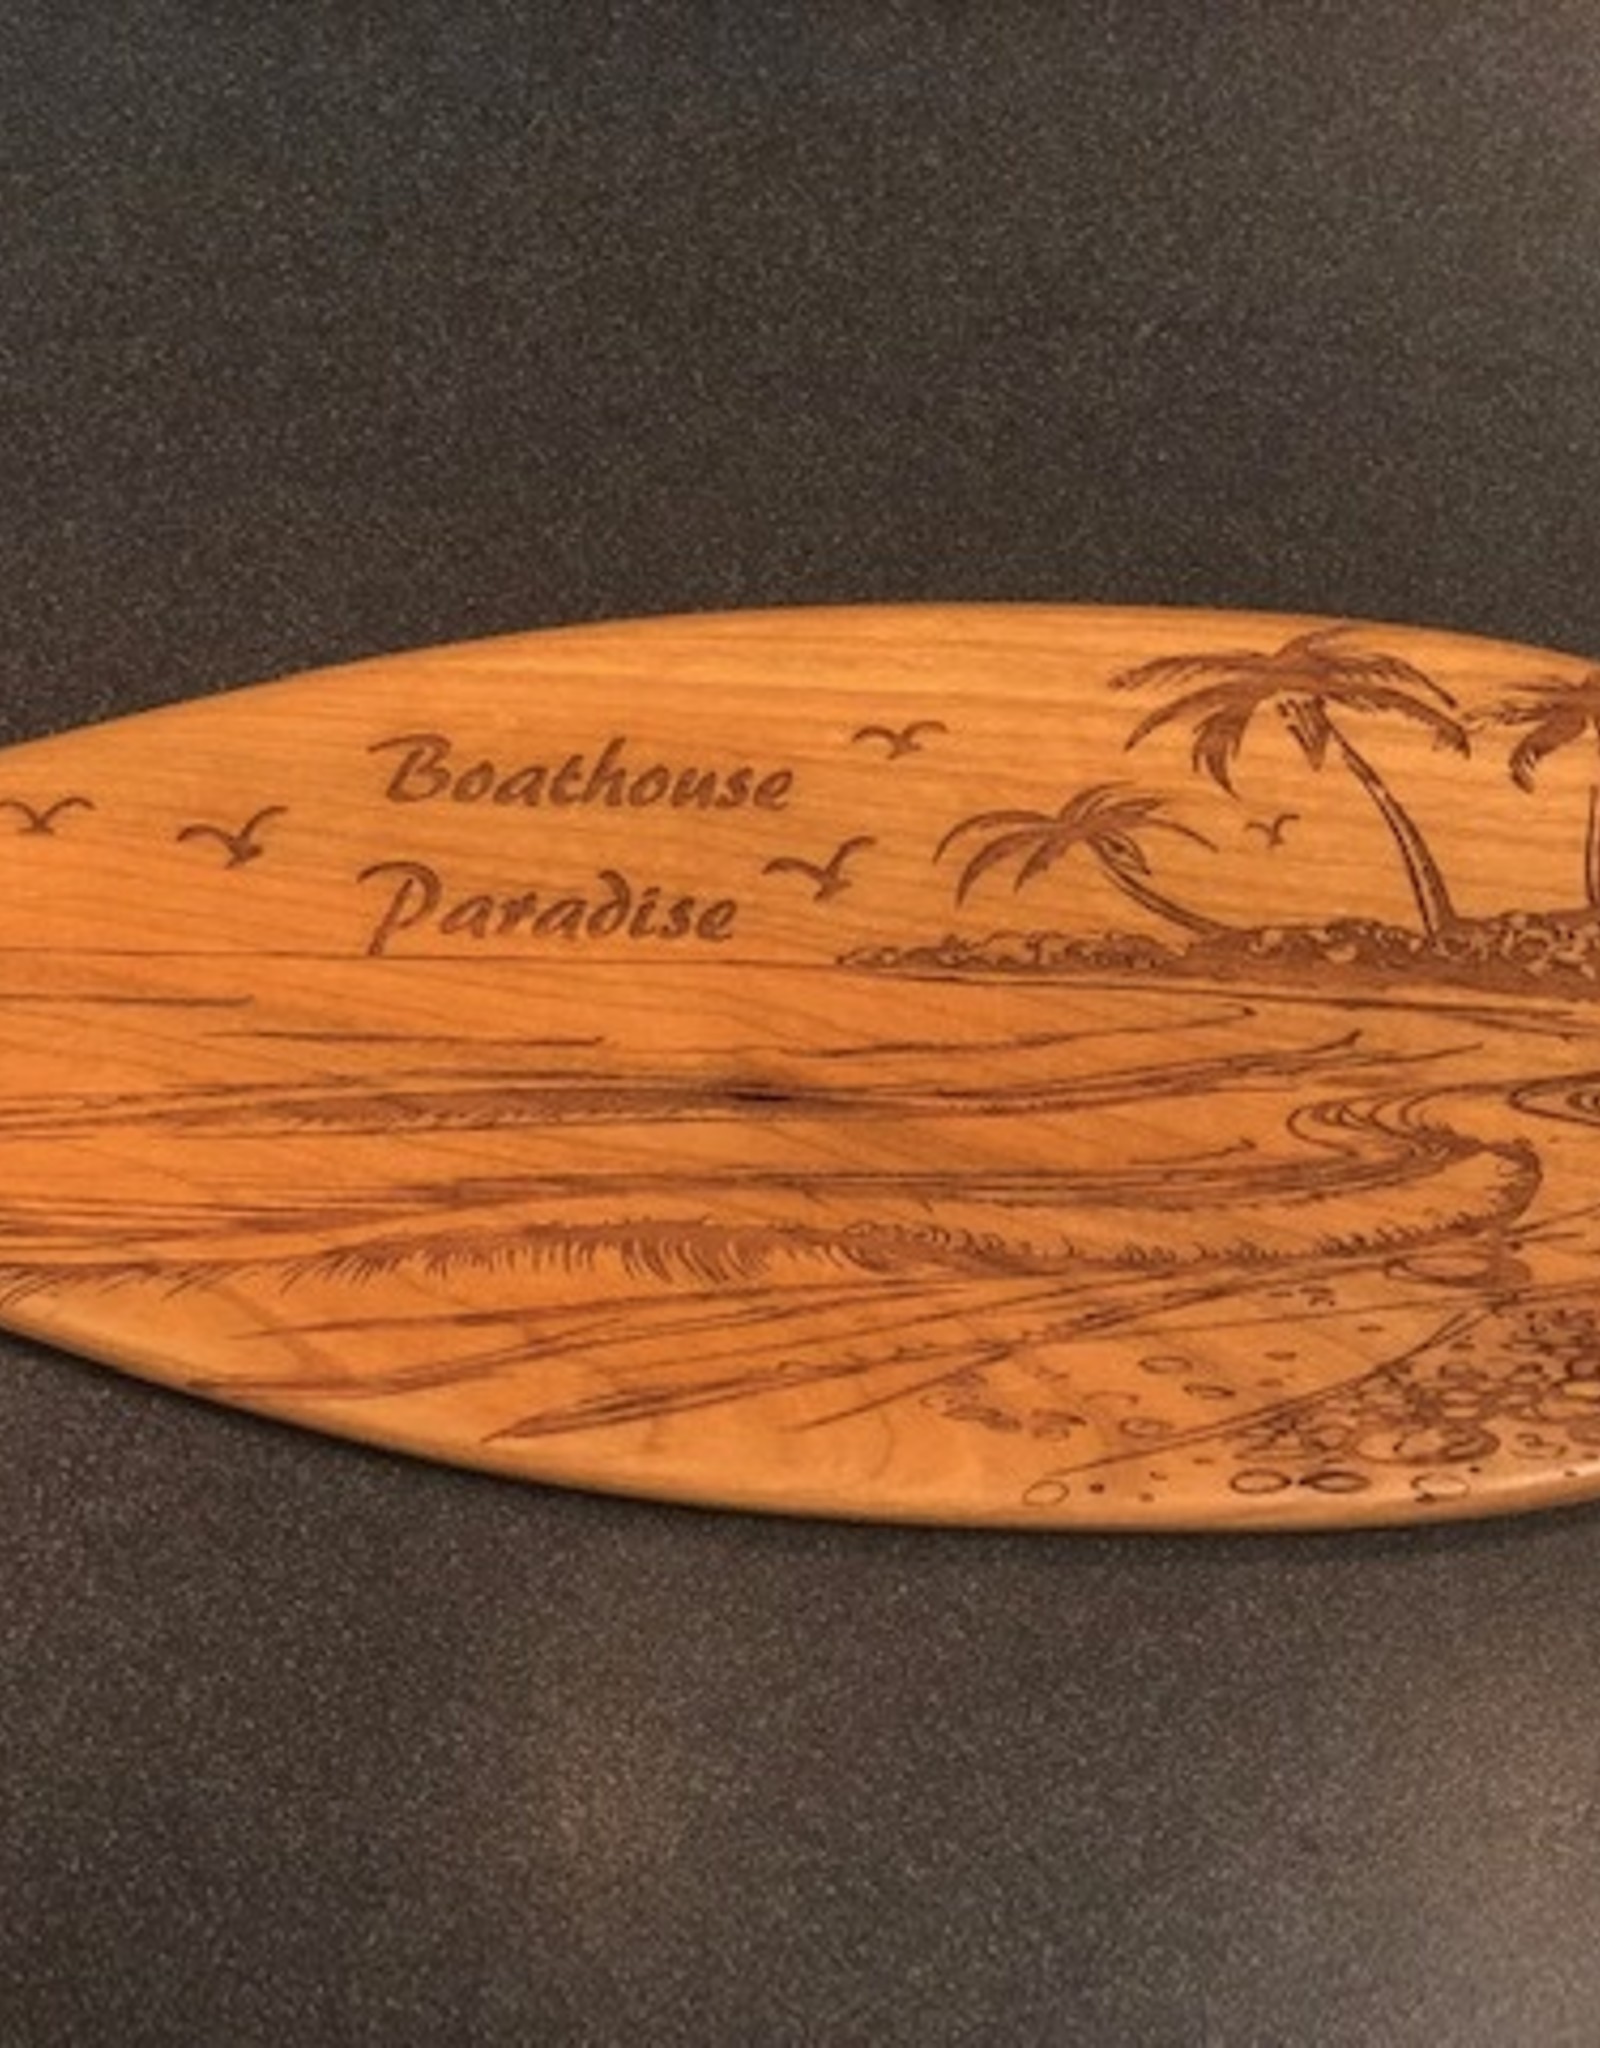 Unique Custom Paddles BOATHOUSE PARADISE PADDLE